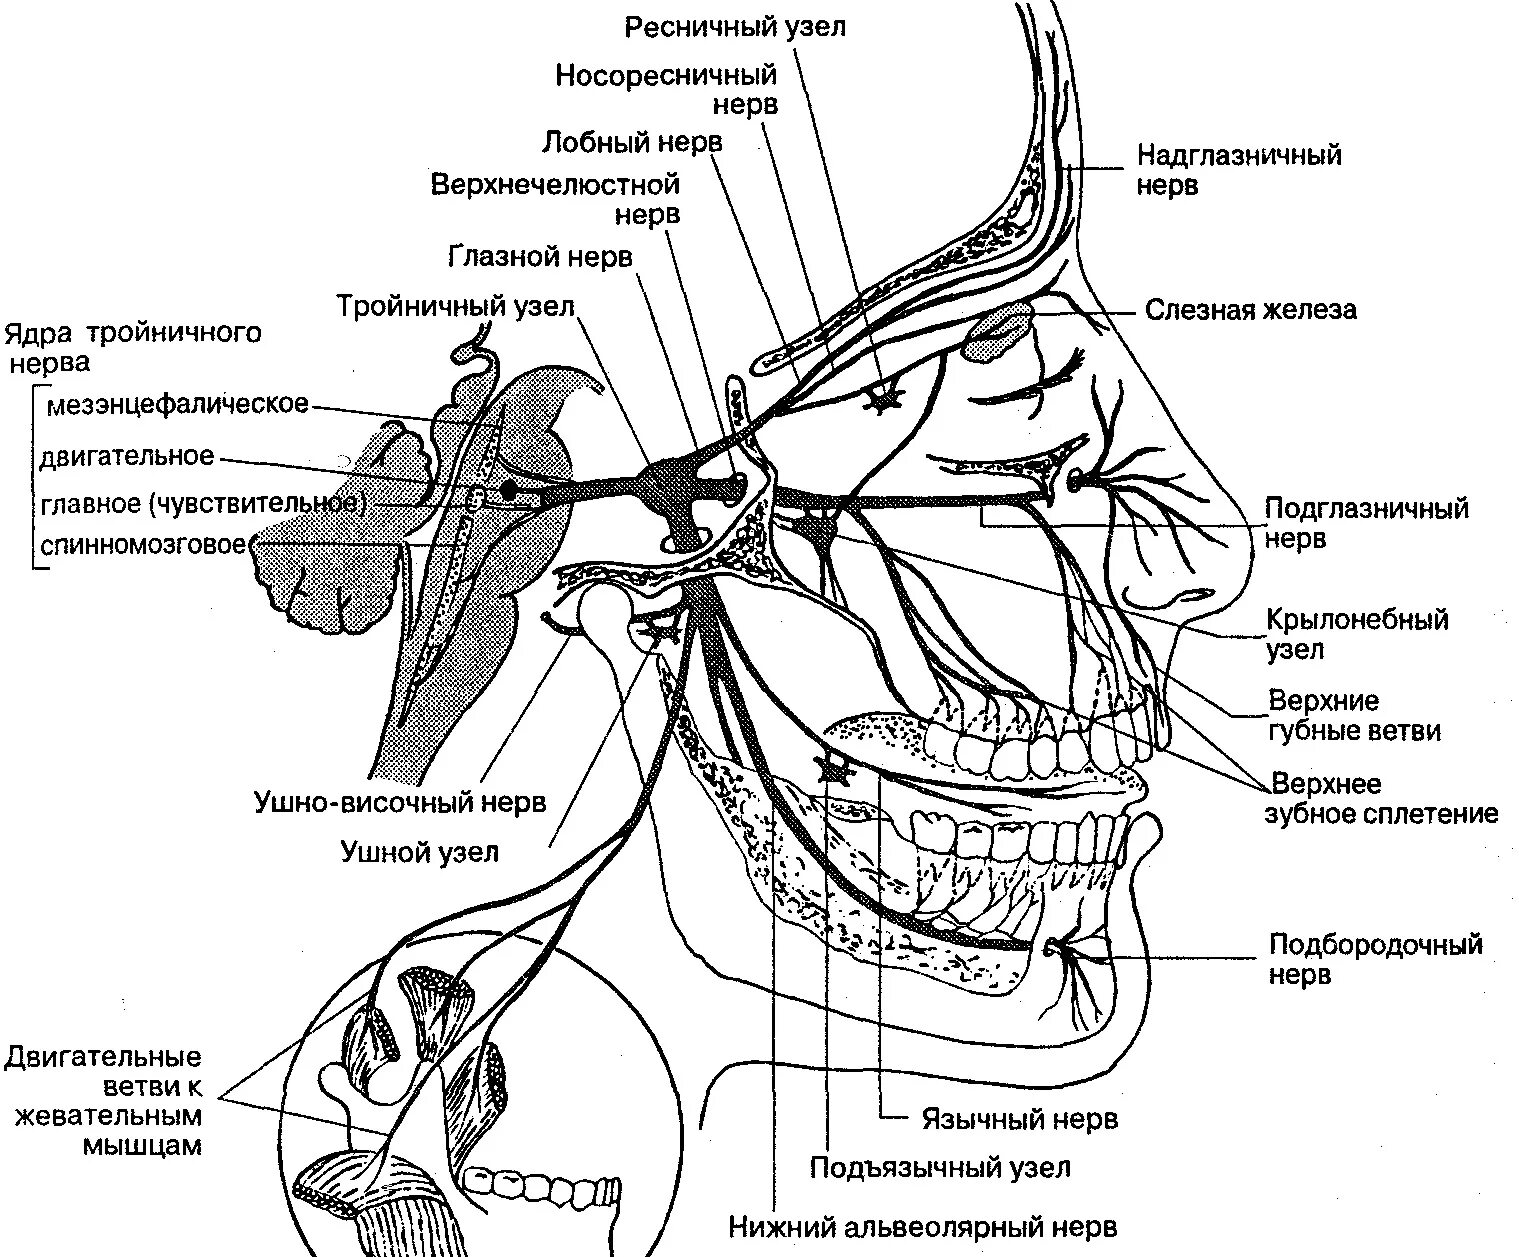 Ветви тройничного нерва анатомия. Схема проекции ветвей тройничного нерва. Иннервация тройничного нерва схема. Узлы тройничного нерва анатомия. Можно греть тройничный нерв